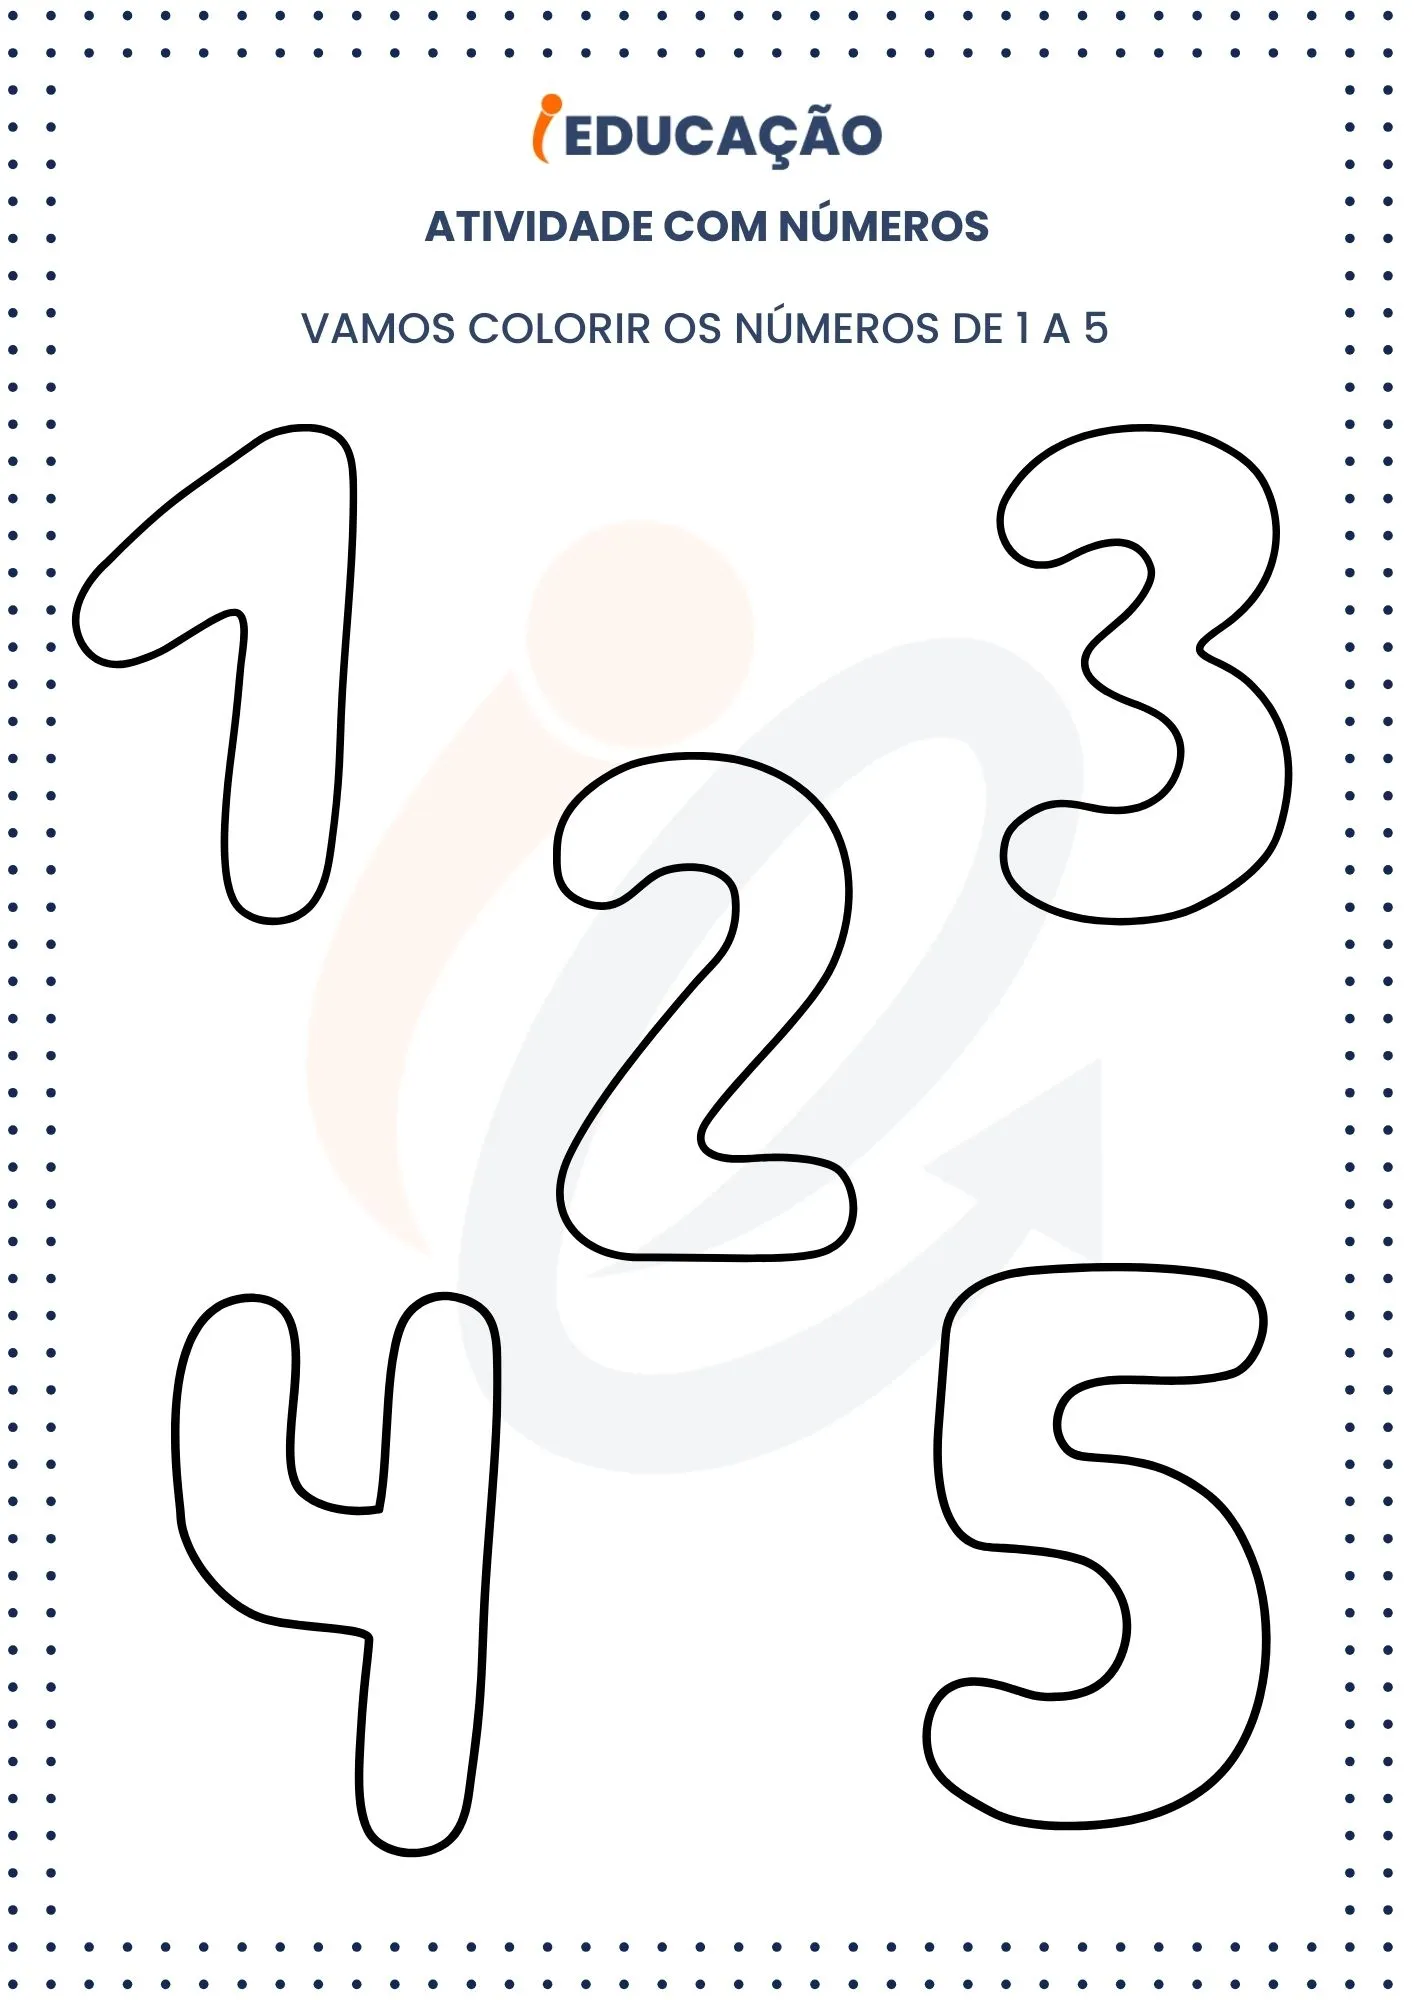 Atividades com números_ vamos colorir os números 1 a 5